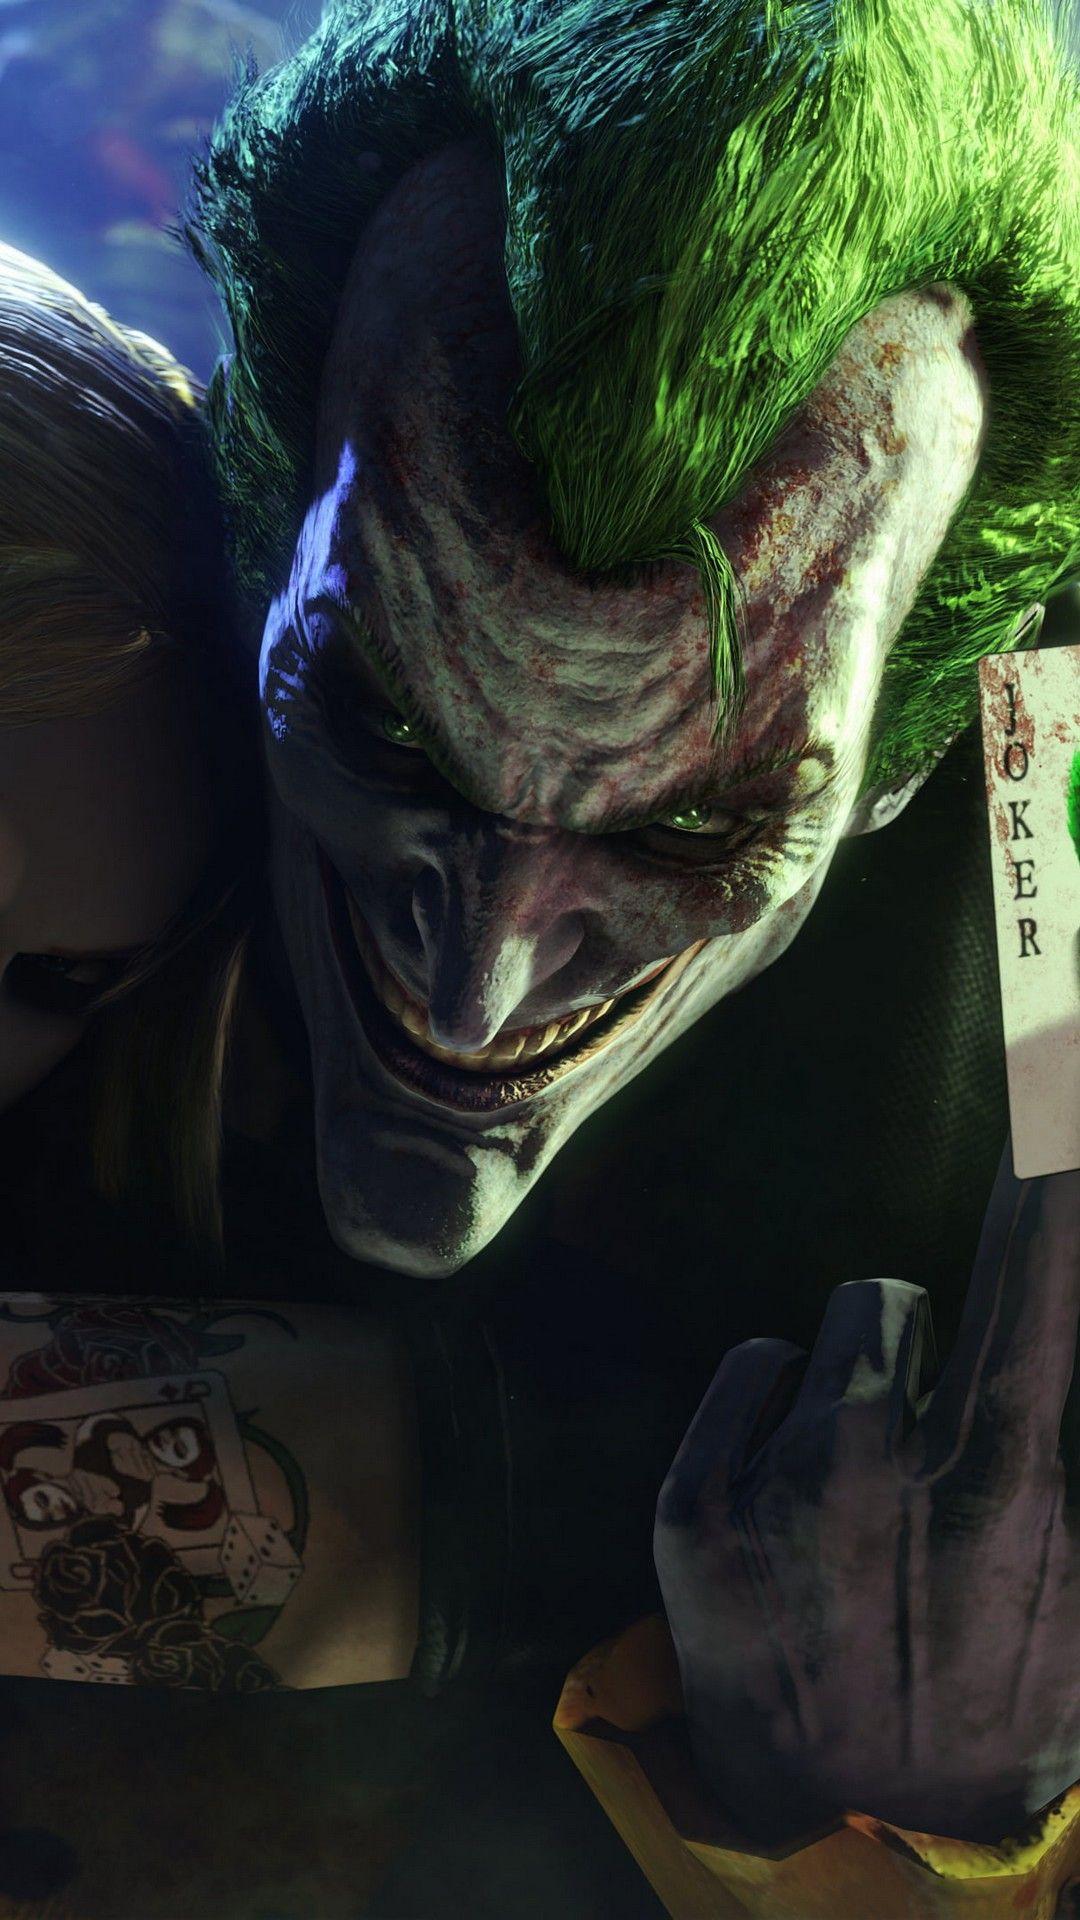 Hình nền Android 1080x1920 Harley Quinn và Joker - Hình nền Android 2020